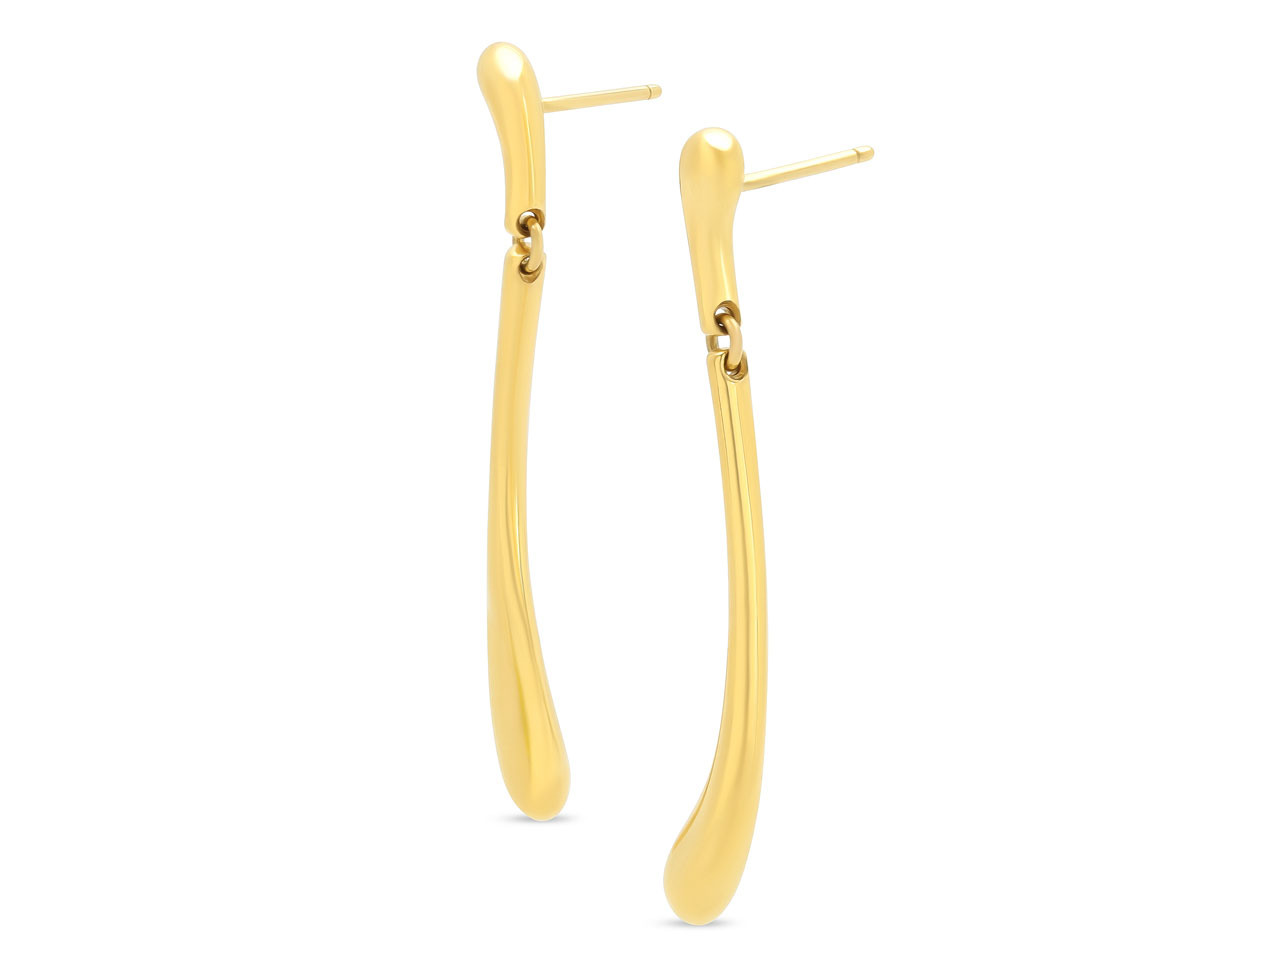 Tiffany & Co. Elsa Peretti 'Teardrop' Dangle Earrings in 18K Gold